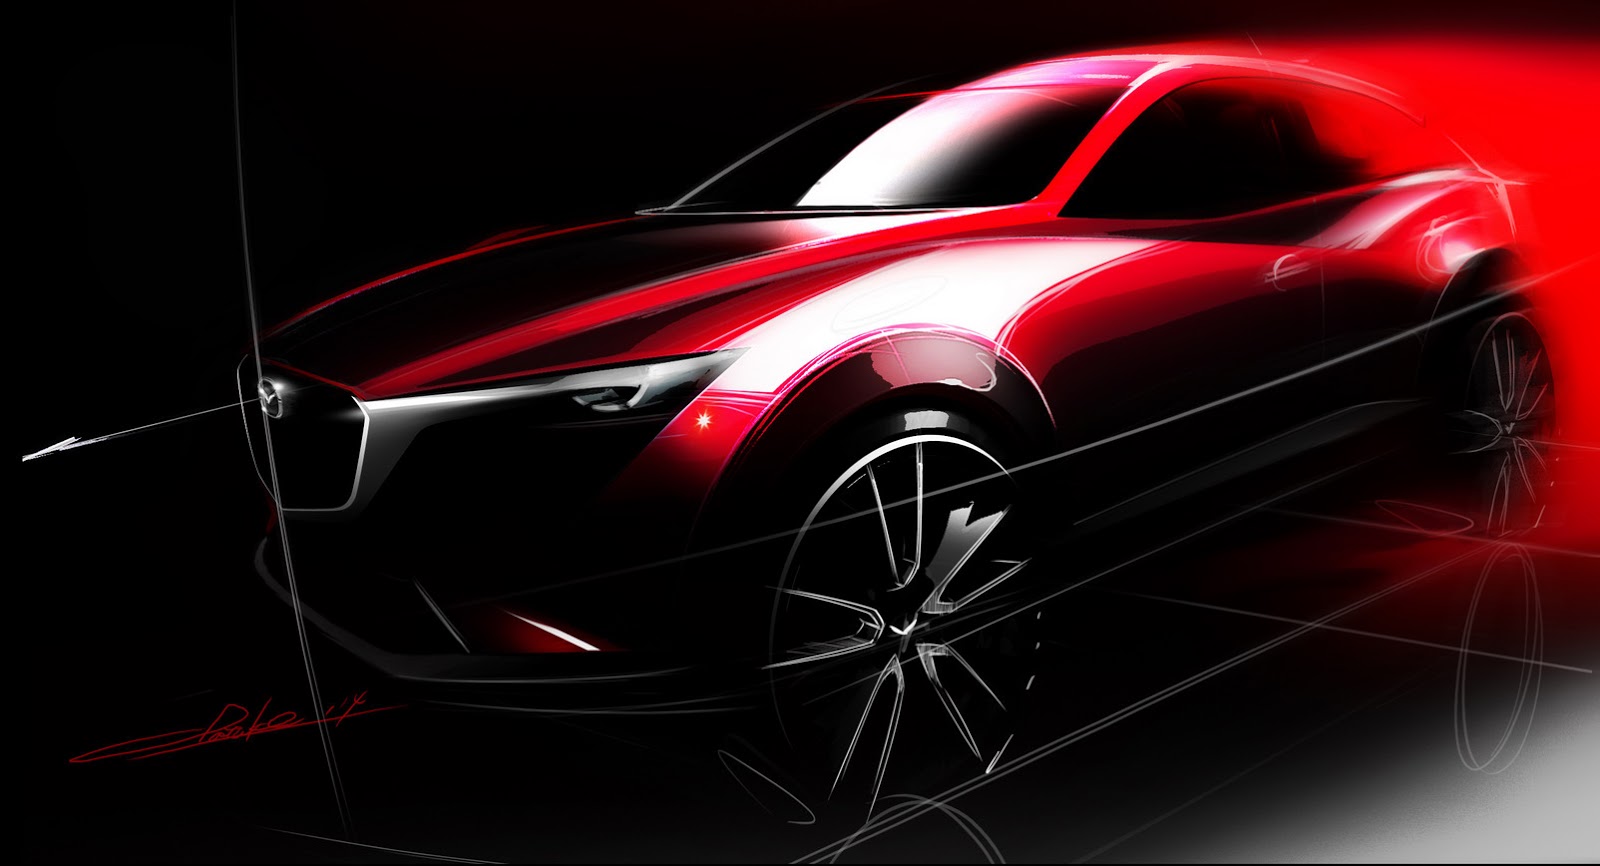 International, Mazda CX-3 Concept 2015 LA Auto Show: Mazda CX-3 Akan Hadir di LA Auto Show